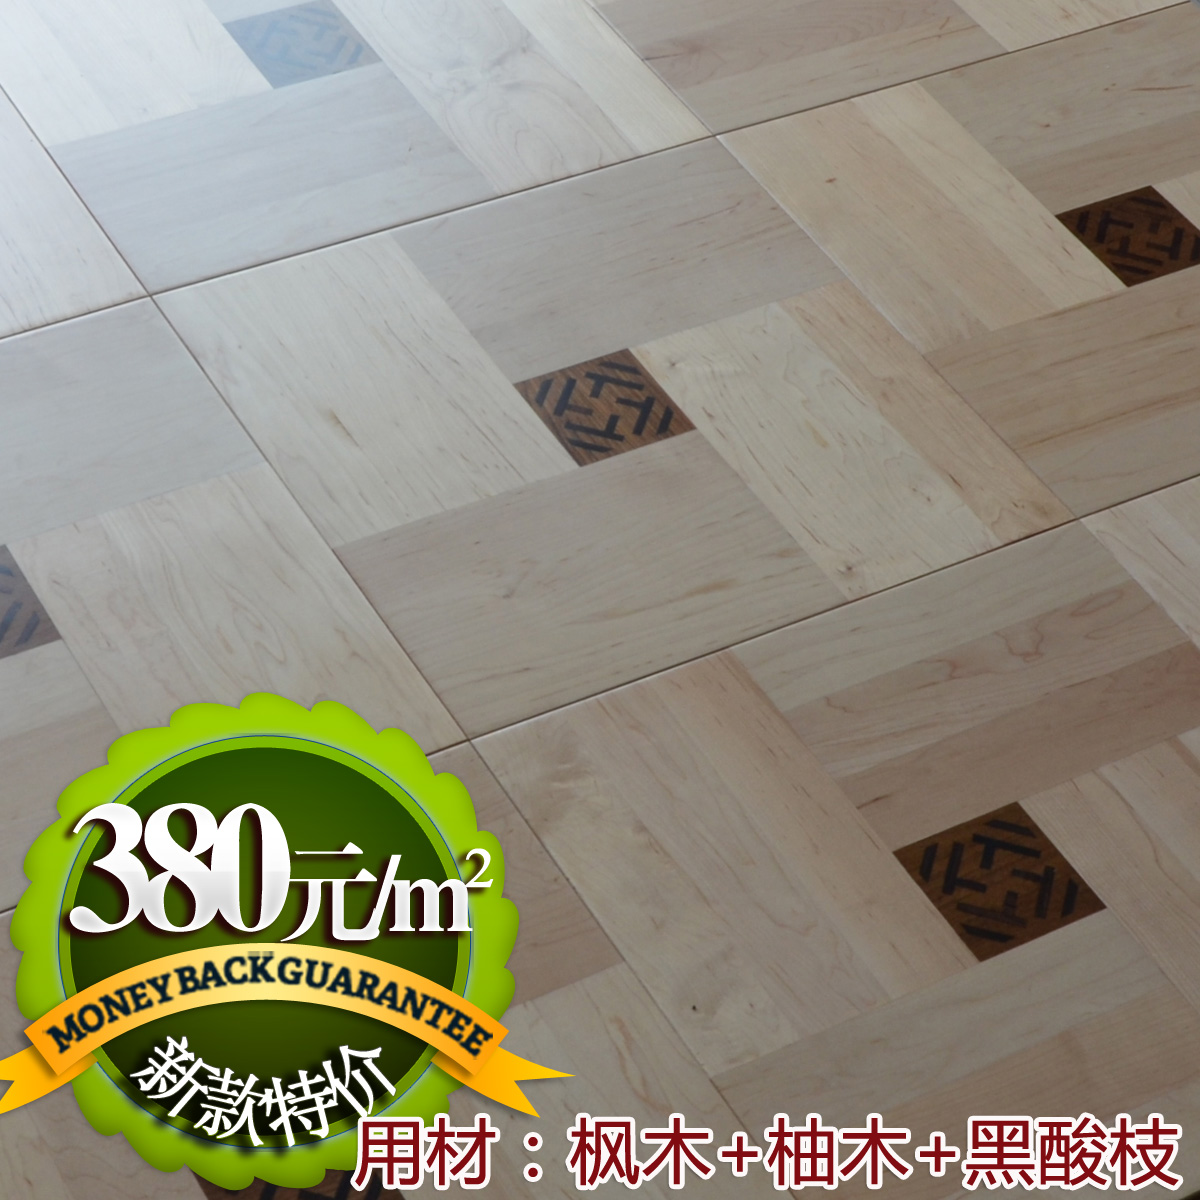 实木复合拼花地板 地热地暖 可来厂选购  简约中式风格拼花地板